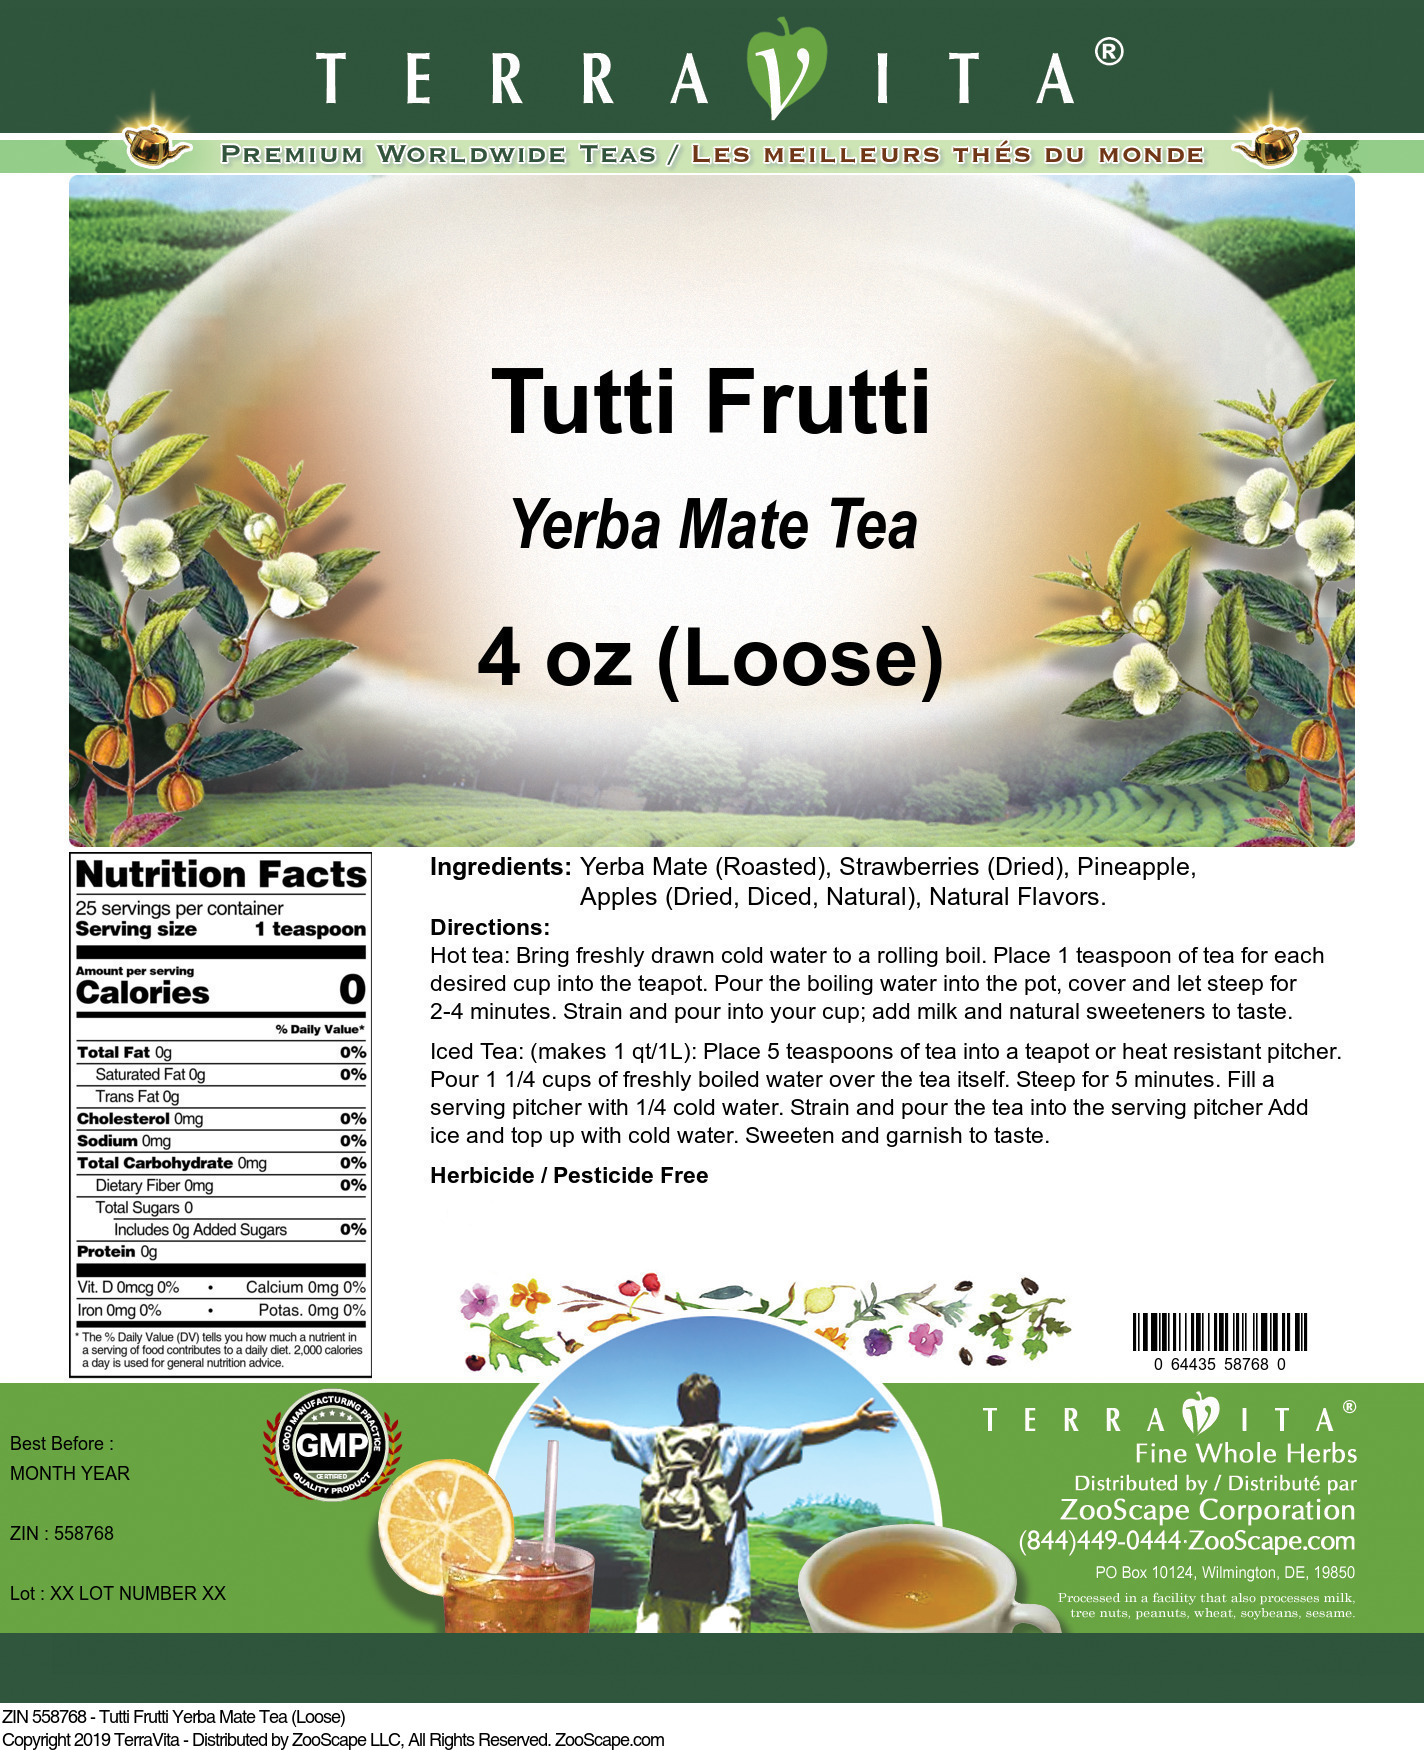 Tutti Frutti Yerba Mate Tea (Loose) - Label